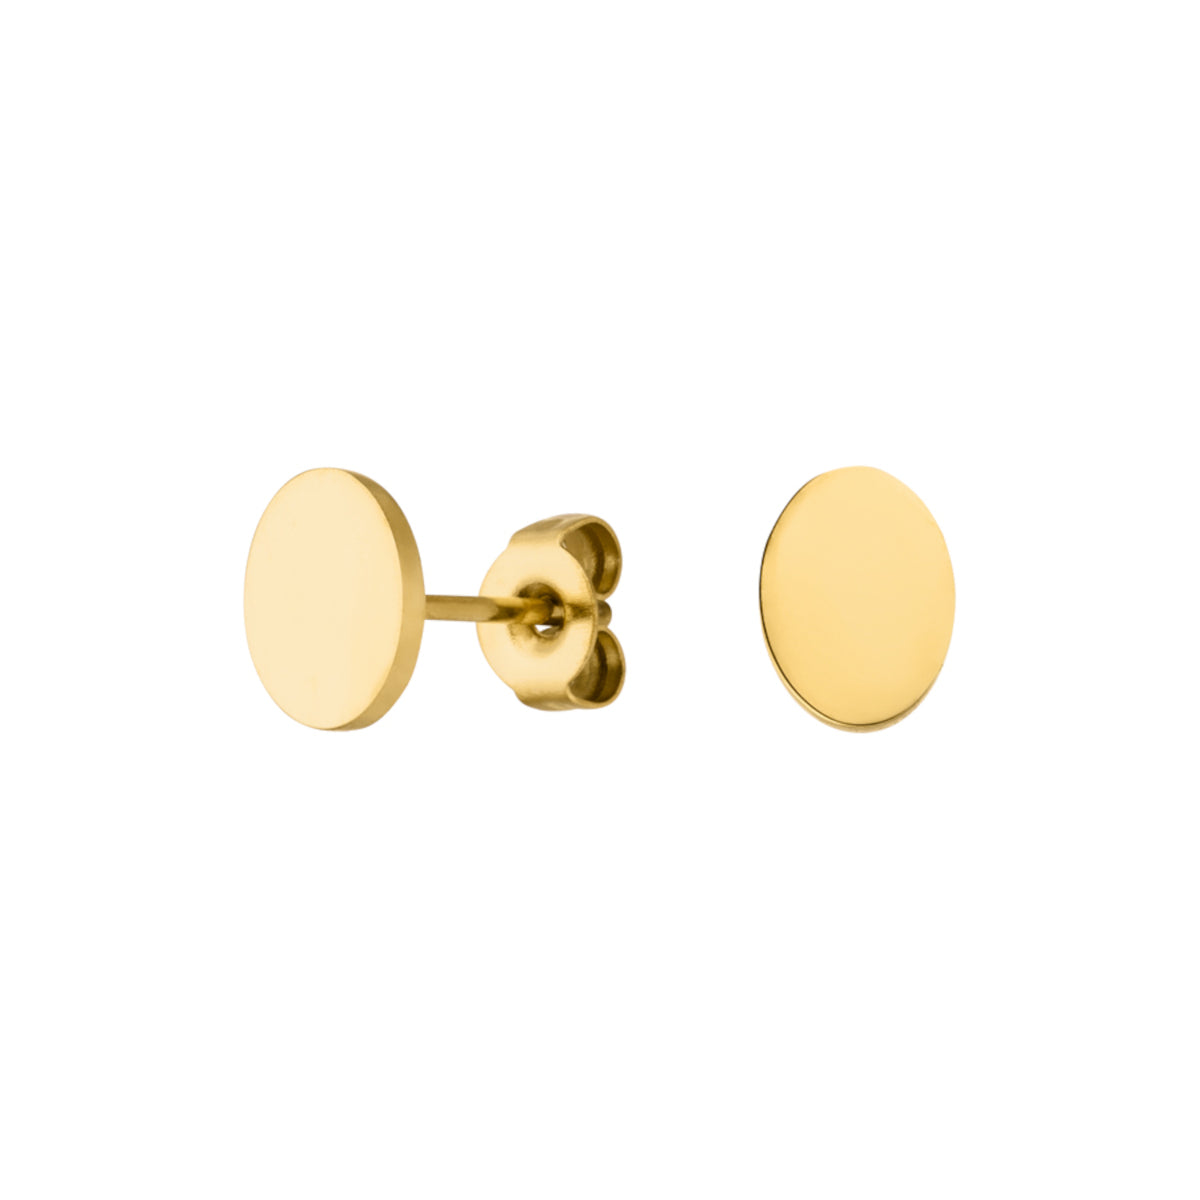 Vergoldete Ohrstecker mit Ovalen Plätchen Motiv aus Edelstahl 